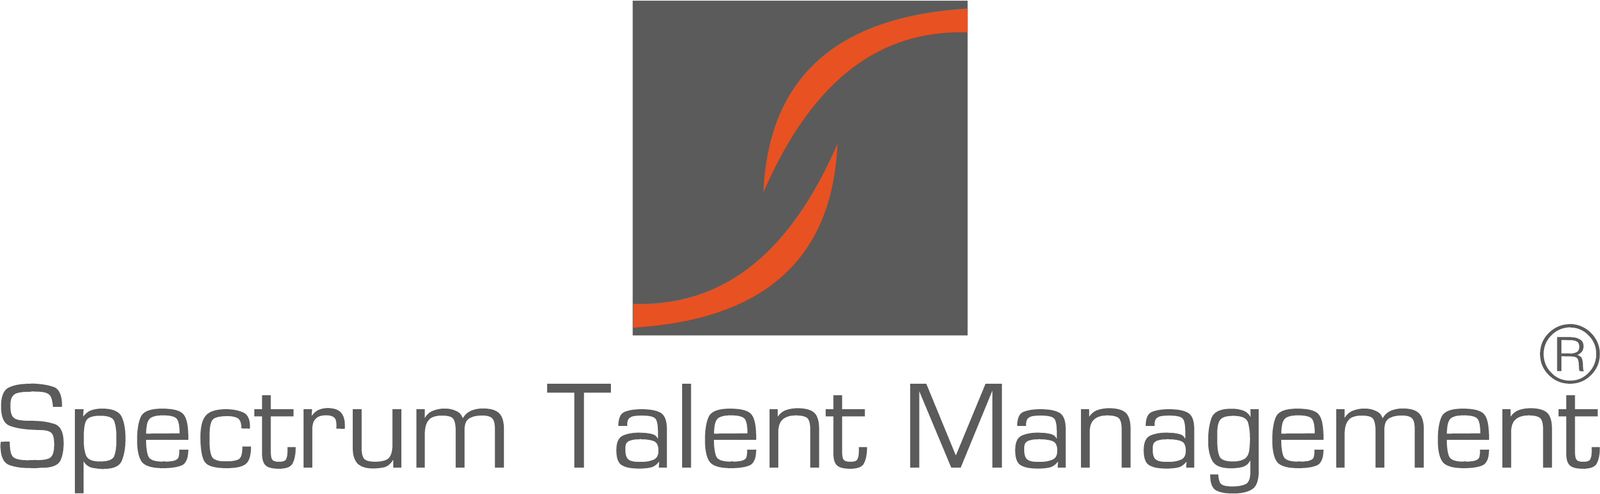 Spectrum Talent Management Ltd